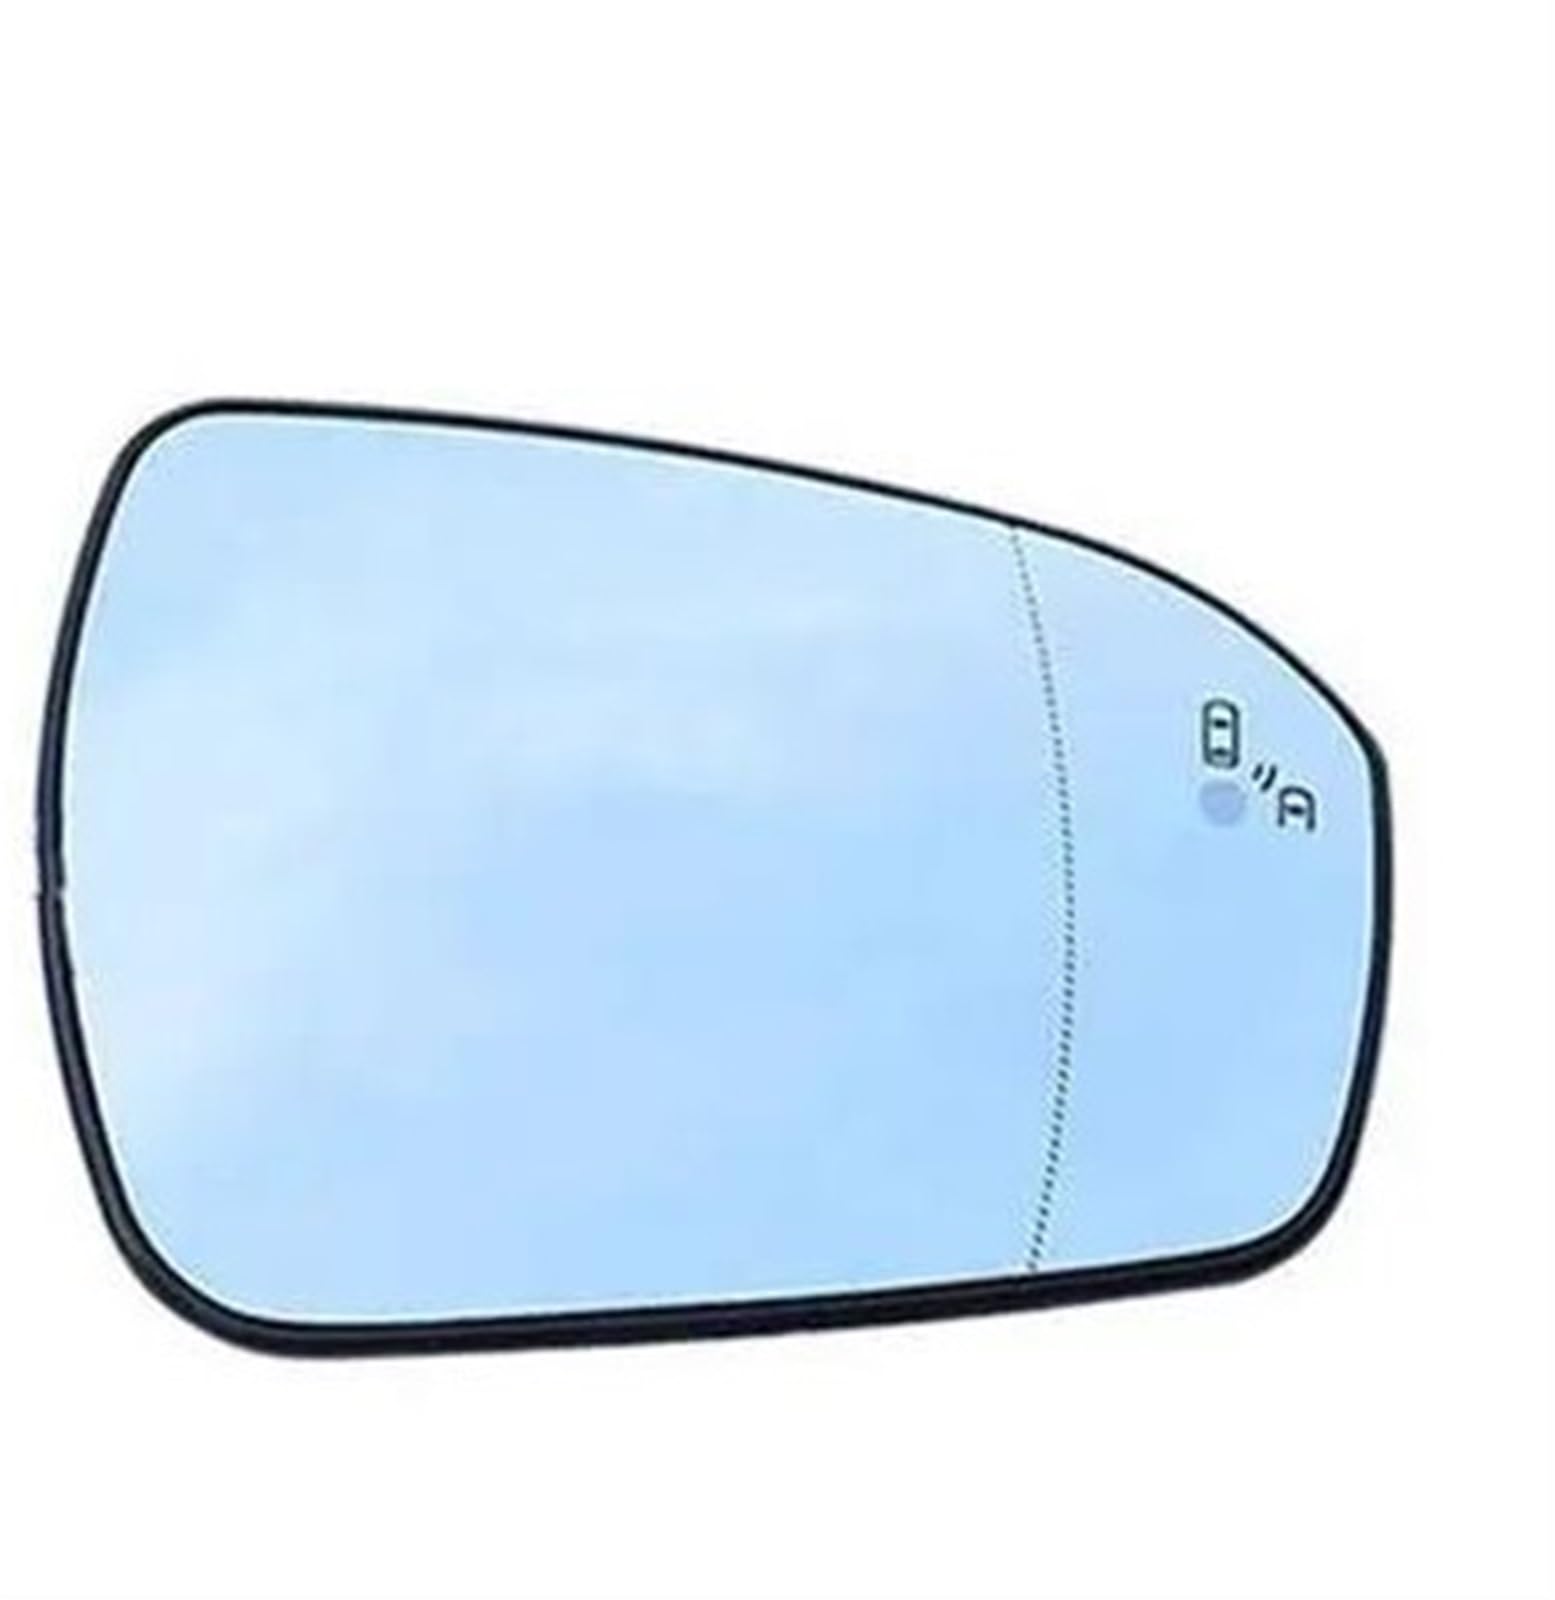 Rück Spiegelglas Für Ford Für Mondeo V Für MK5 2014 2015 2016 2017 2018 Auto Erhitzt Blind Spot Warnung Flügel Hinten Spiegel Glas Spiegelglas beheizbar (Farbe : rechts) von ESPYN